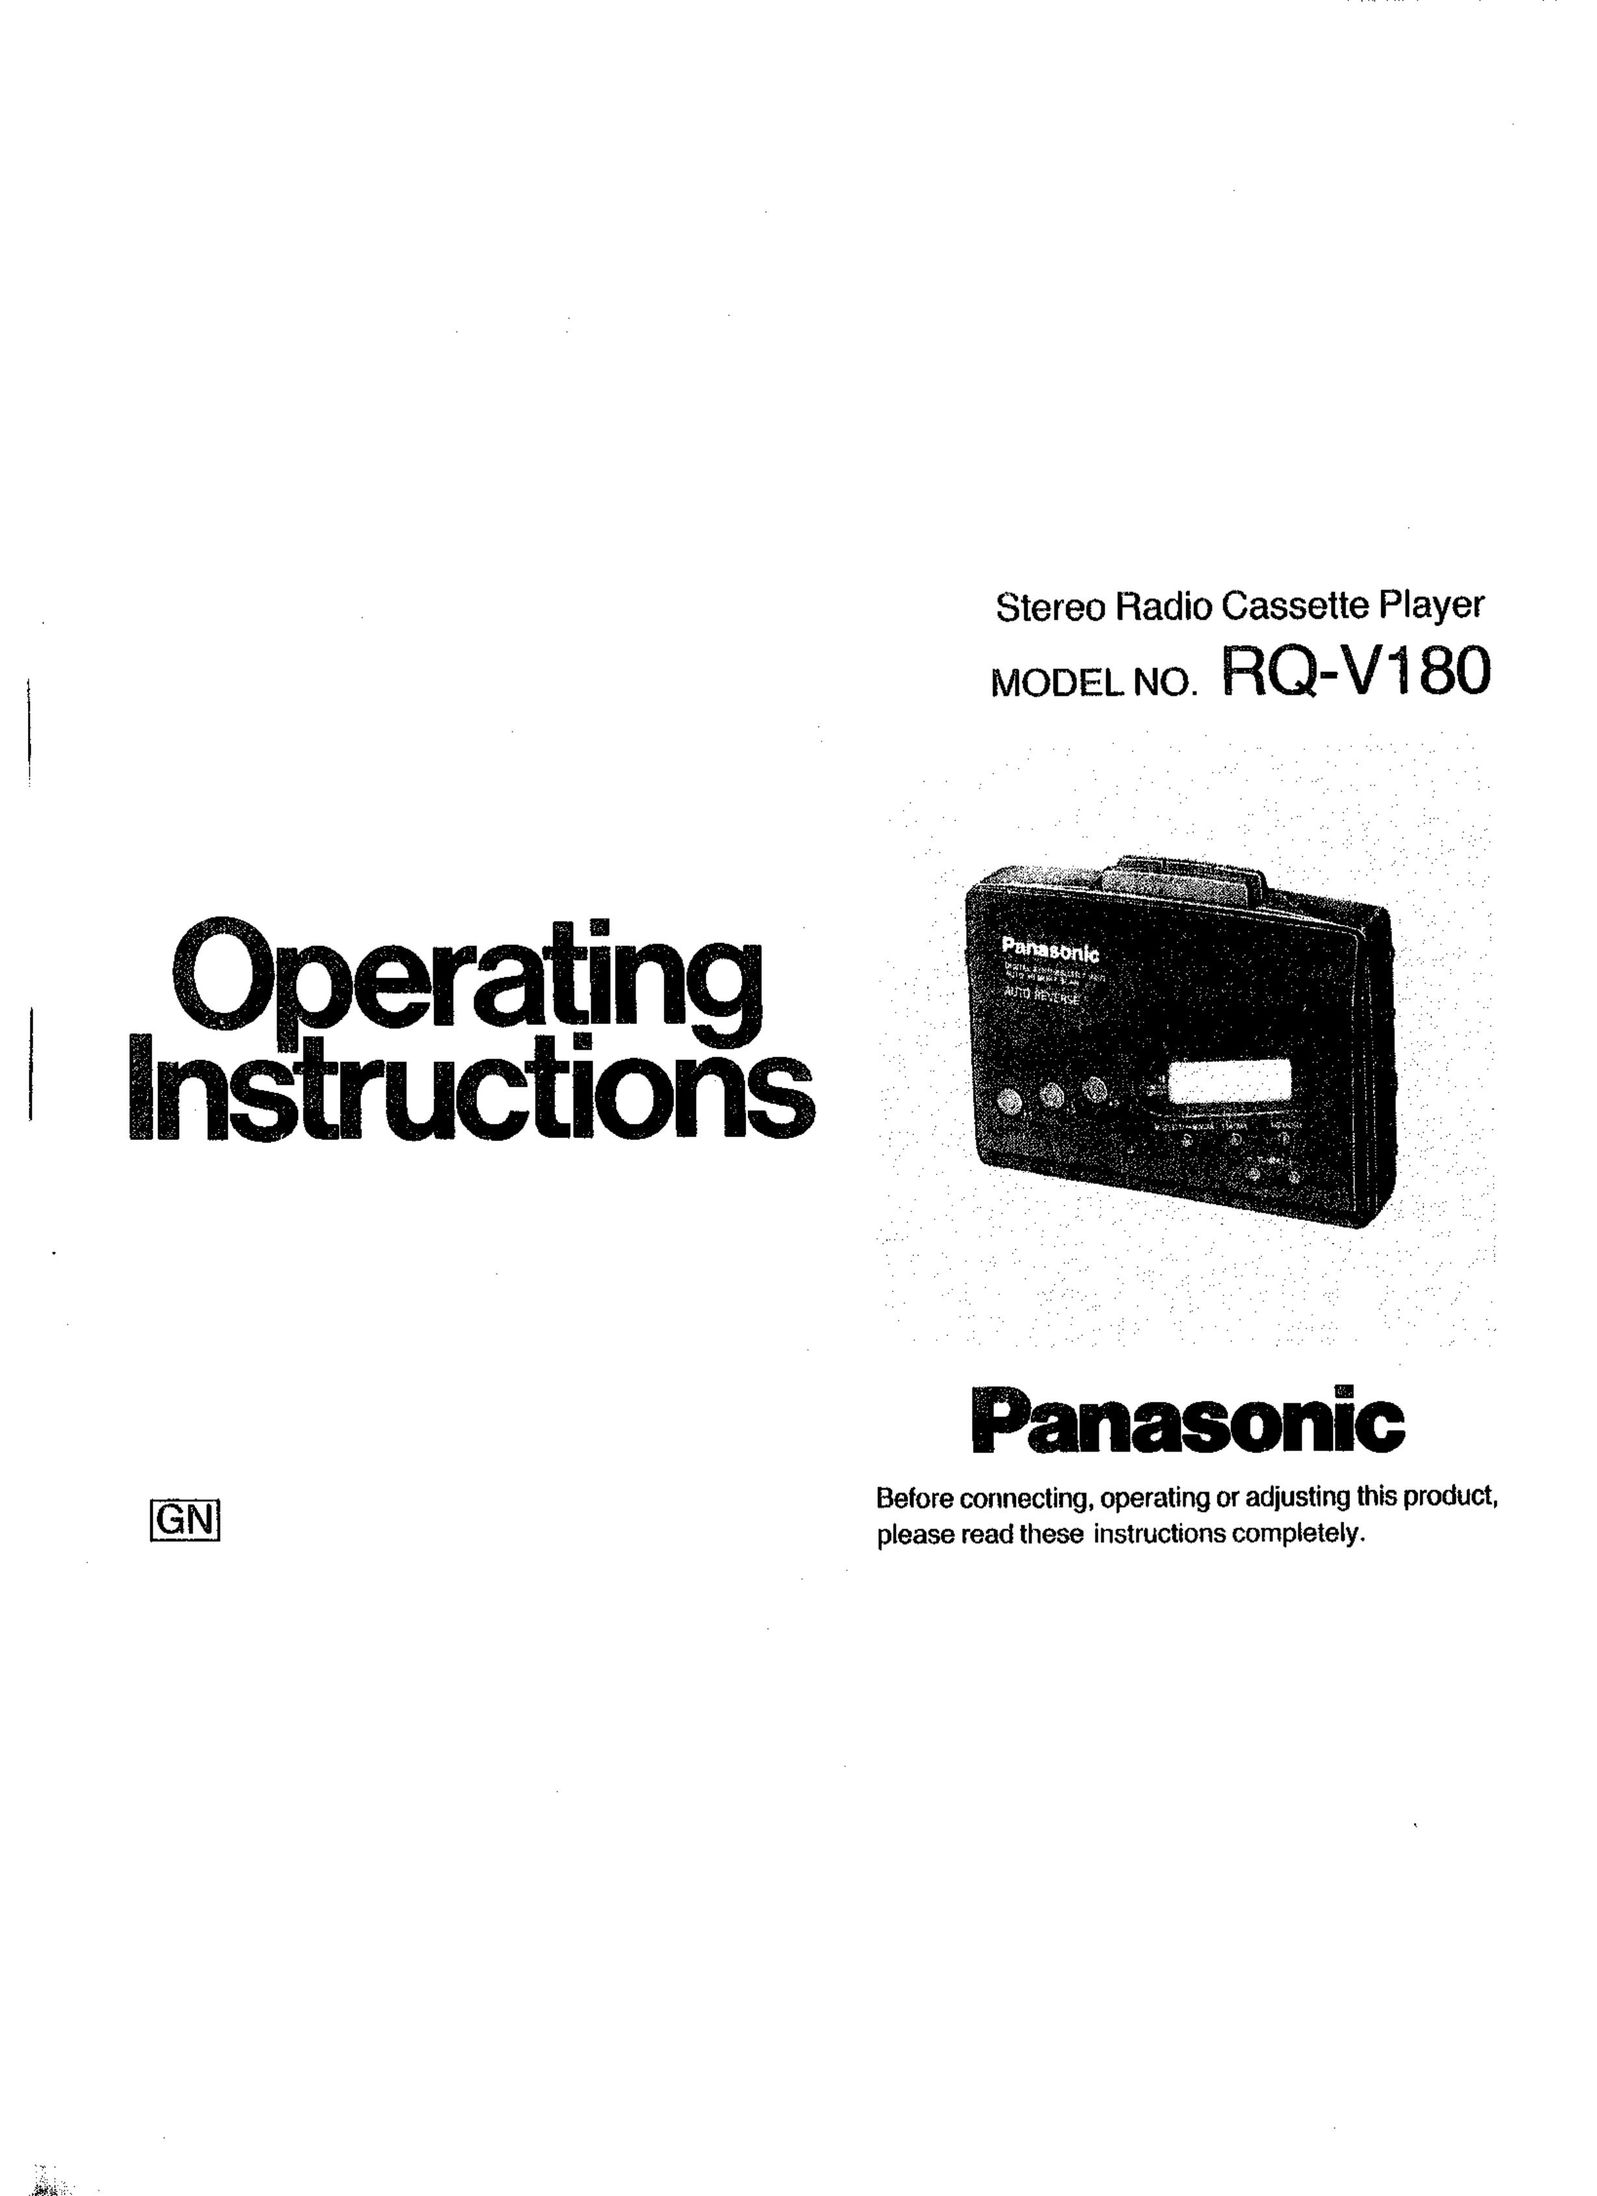 Panasonic RQ-V180 Cassette Player User Manual